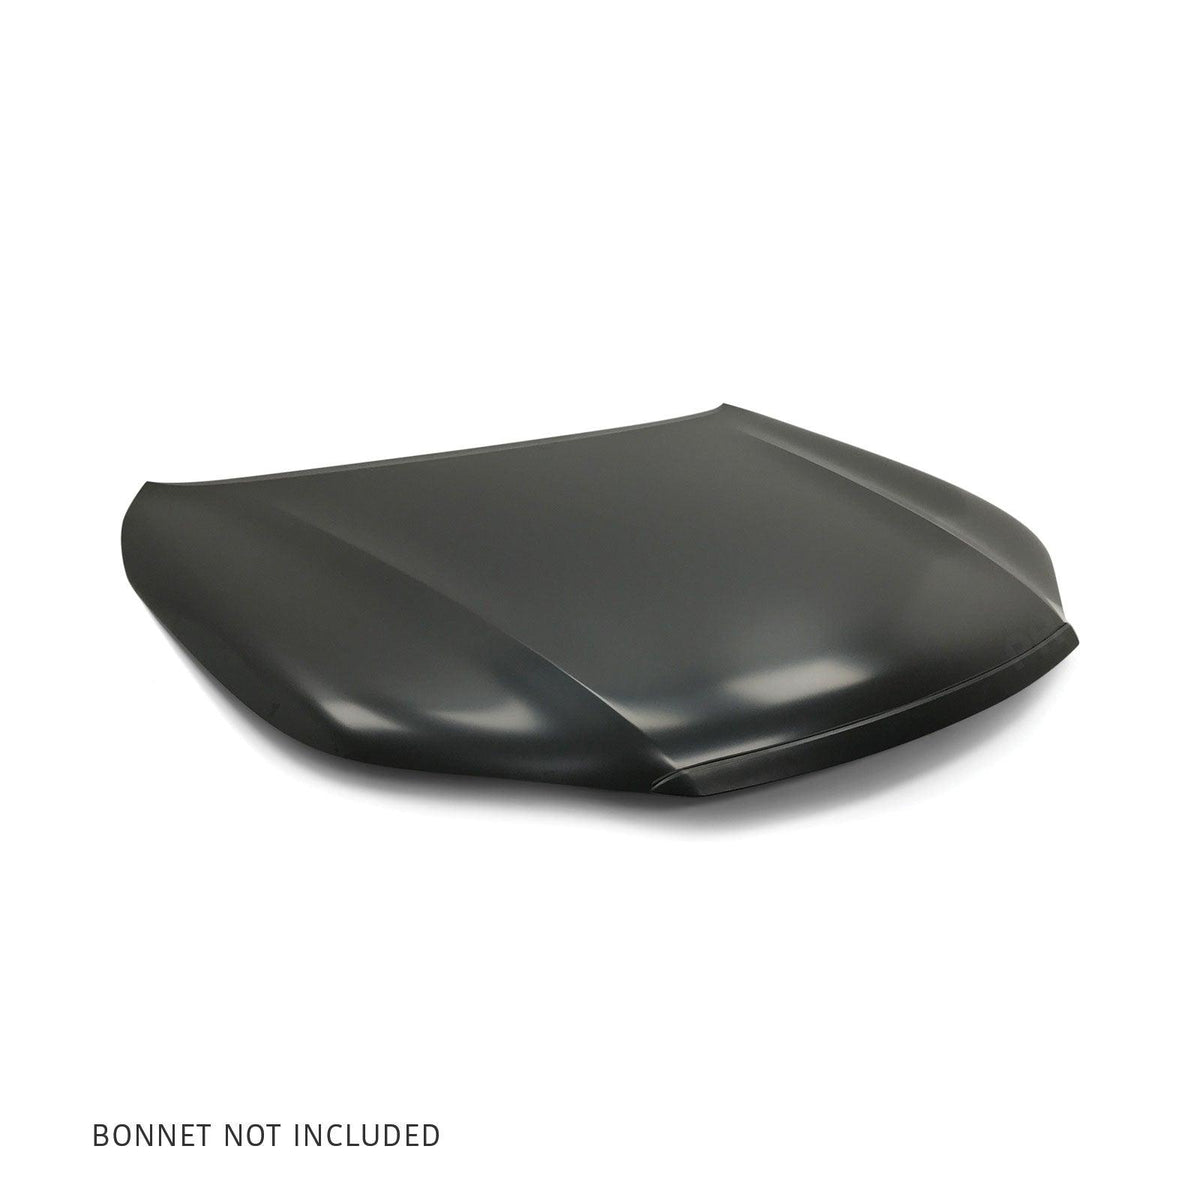 Bonnet Hood Trim Mould Black Fits Toyota Hilux N80 2015-2020 - 4X4OC™